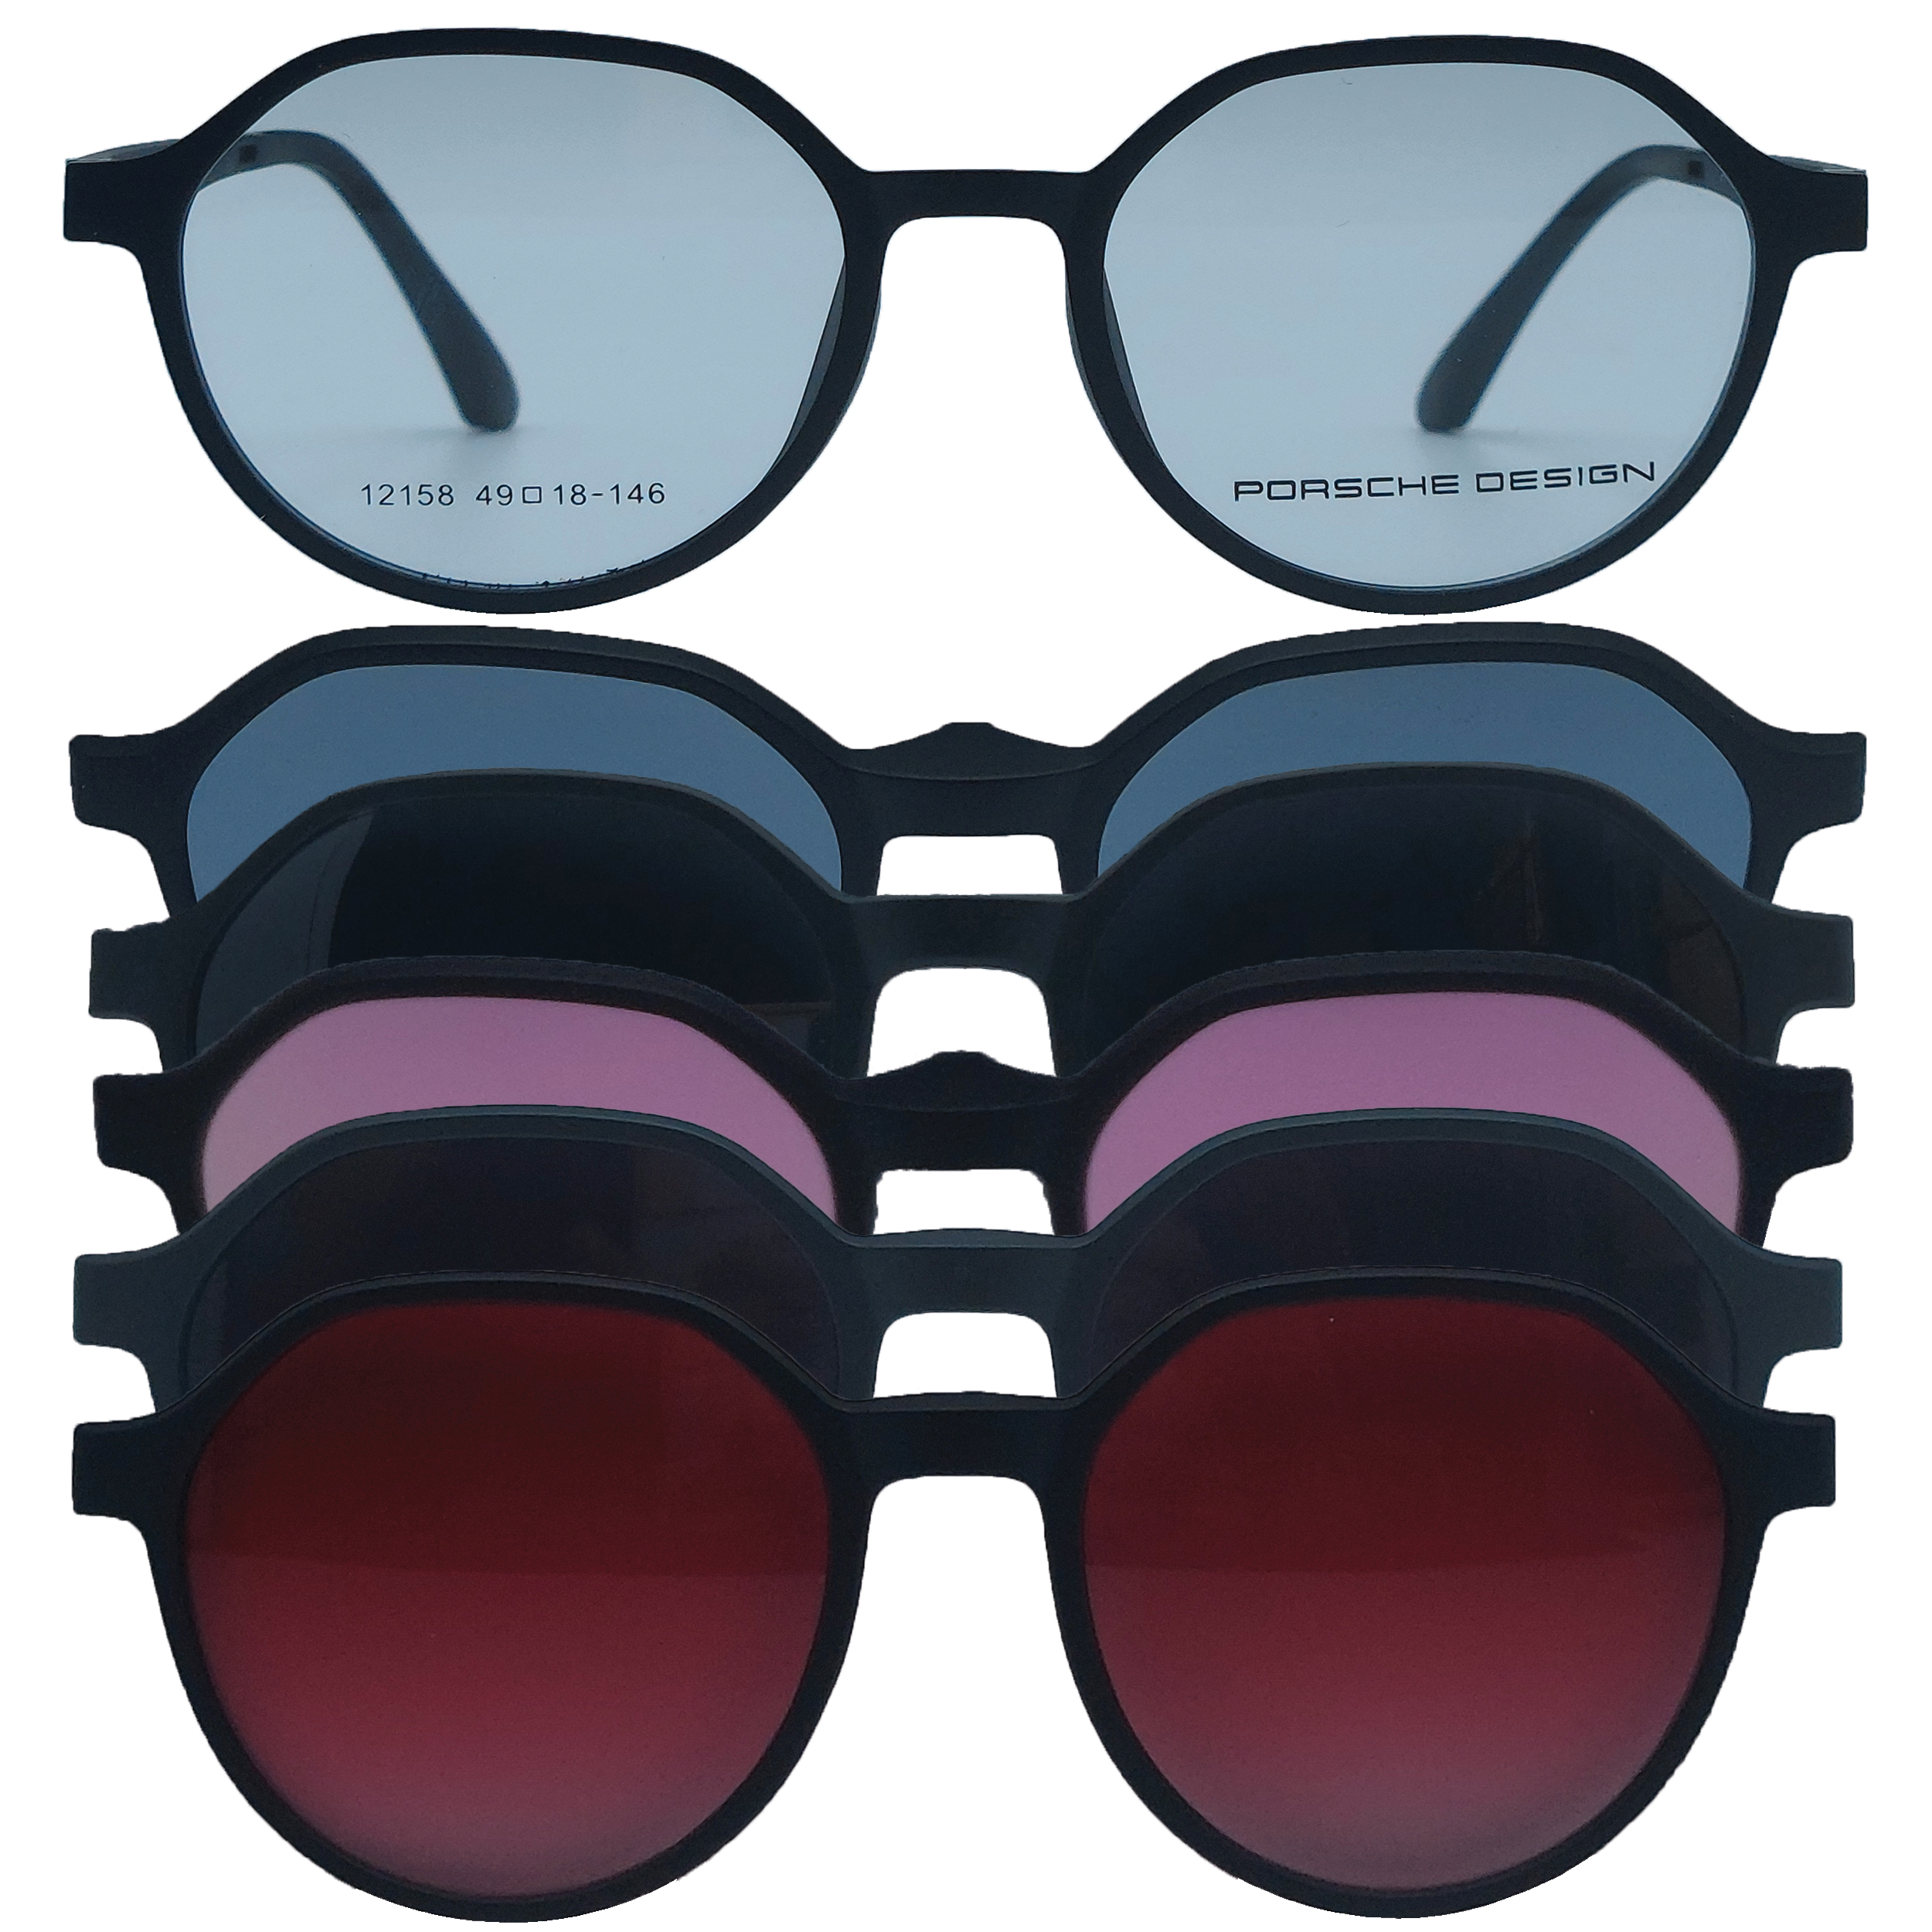 فریم عینک طبی بچگانه مدل 12158 C2 به همره کاور آفتابی مجموعه 6 عددی